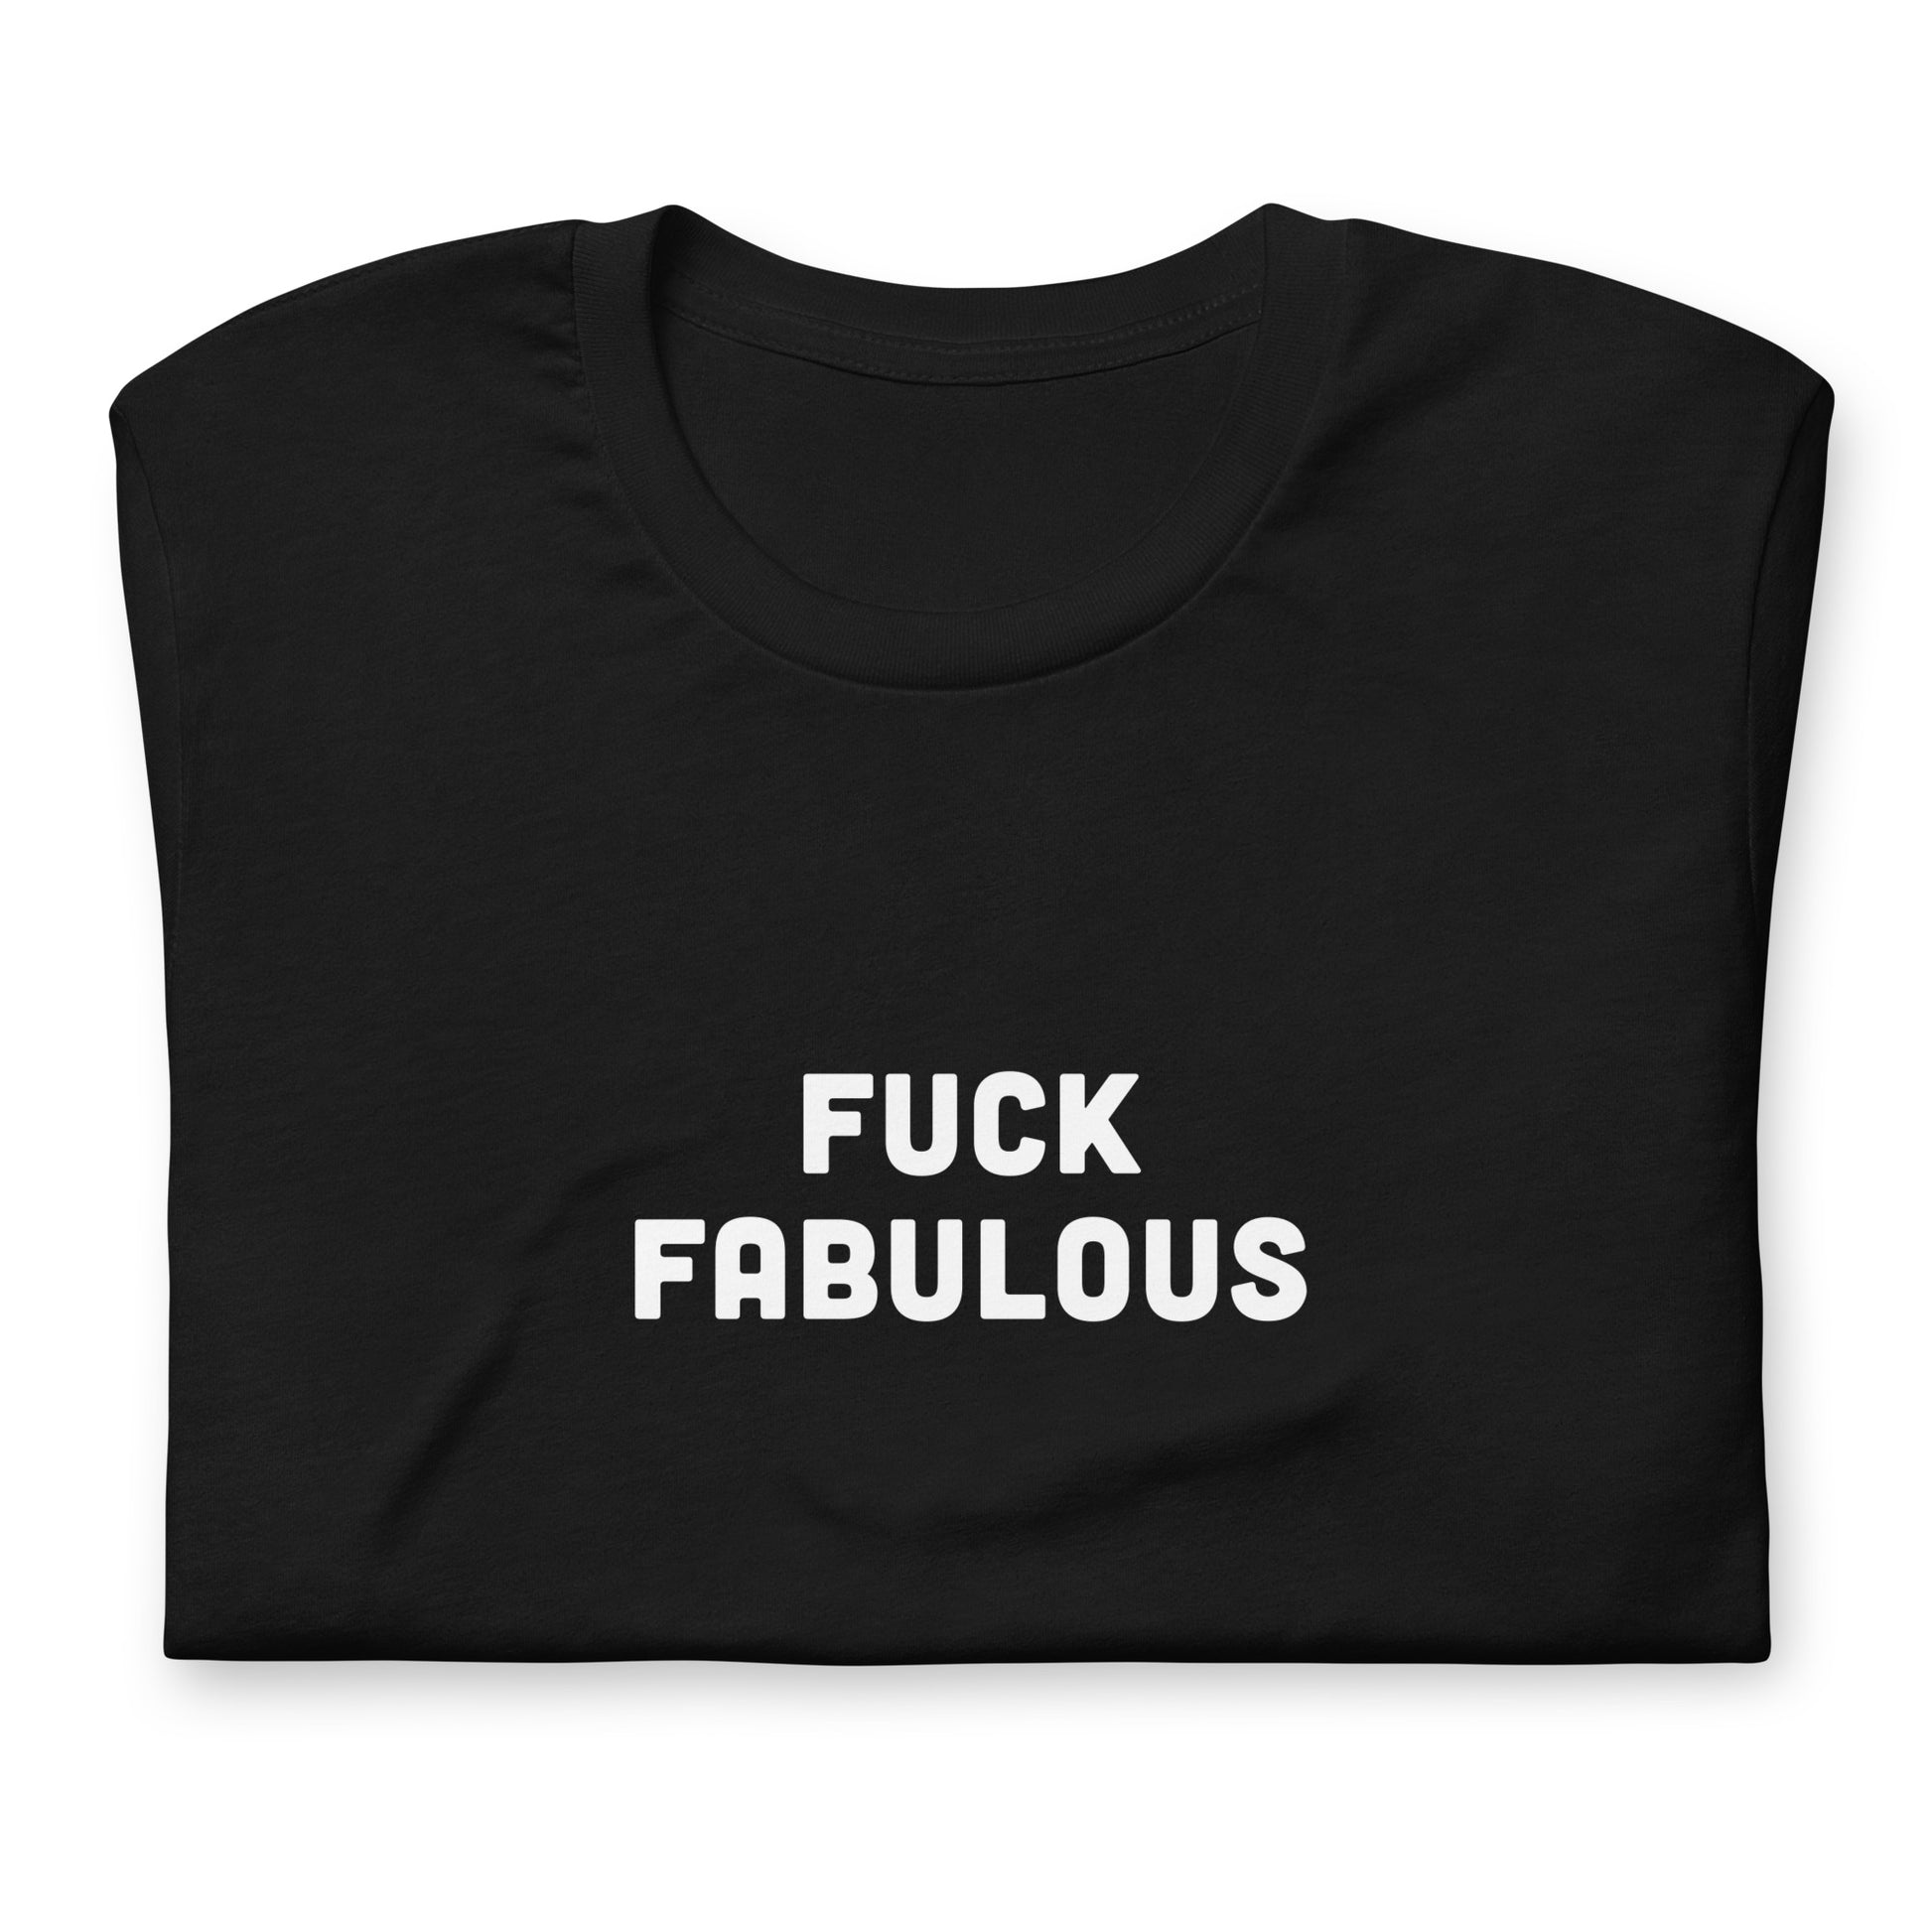 Fuck Fabulous T-Shirt Size M Color Black